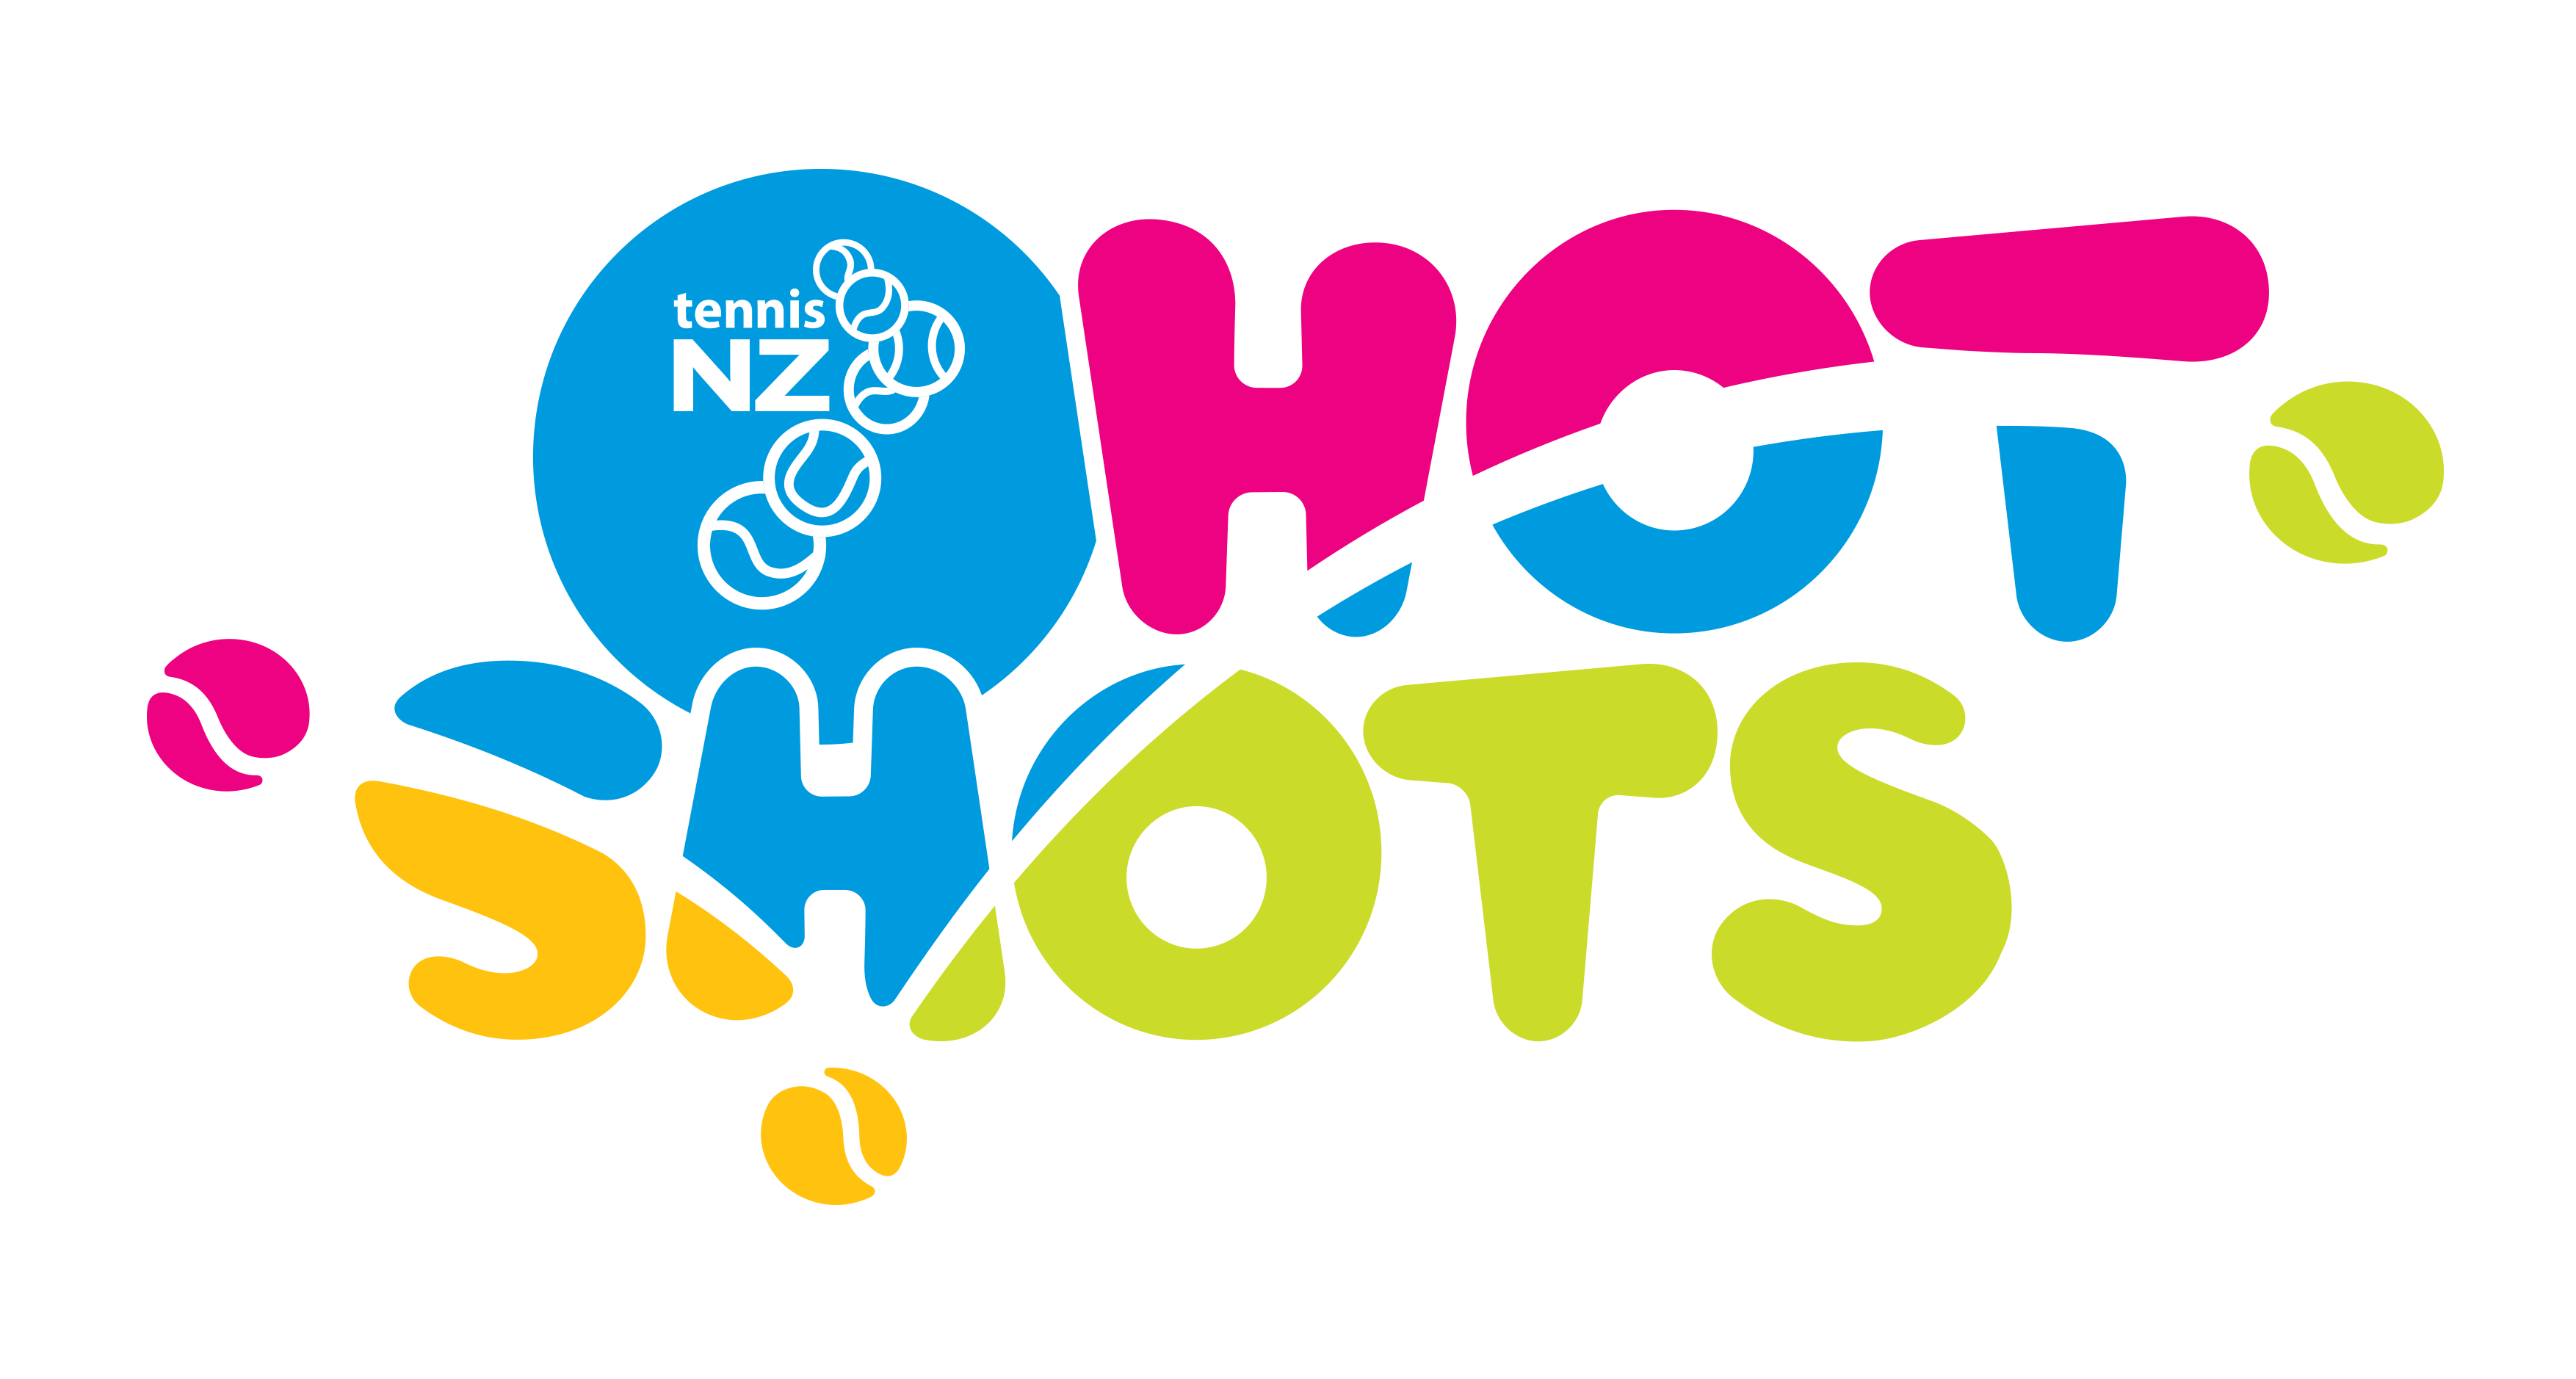 hot shots tennis